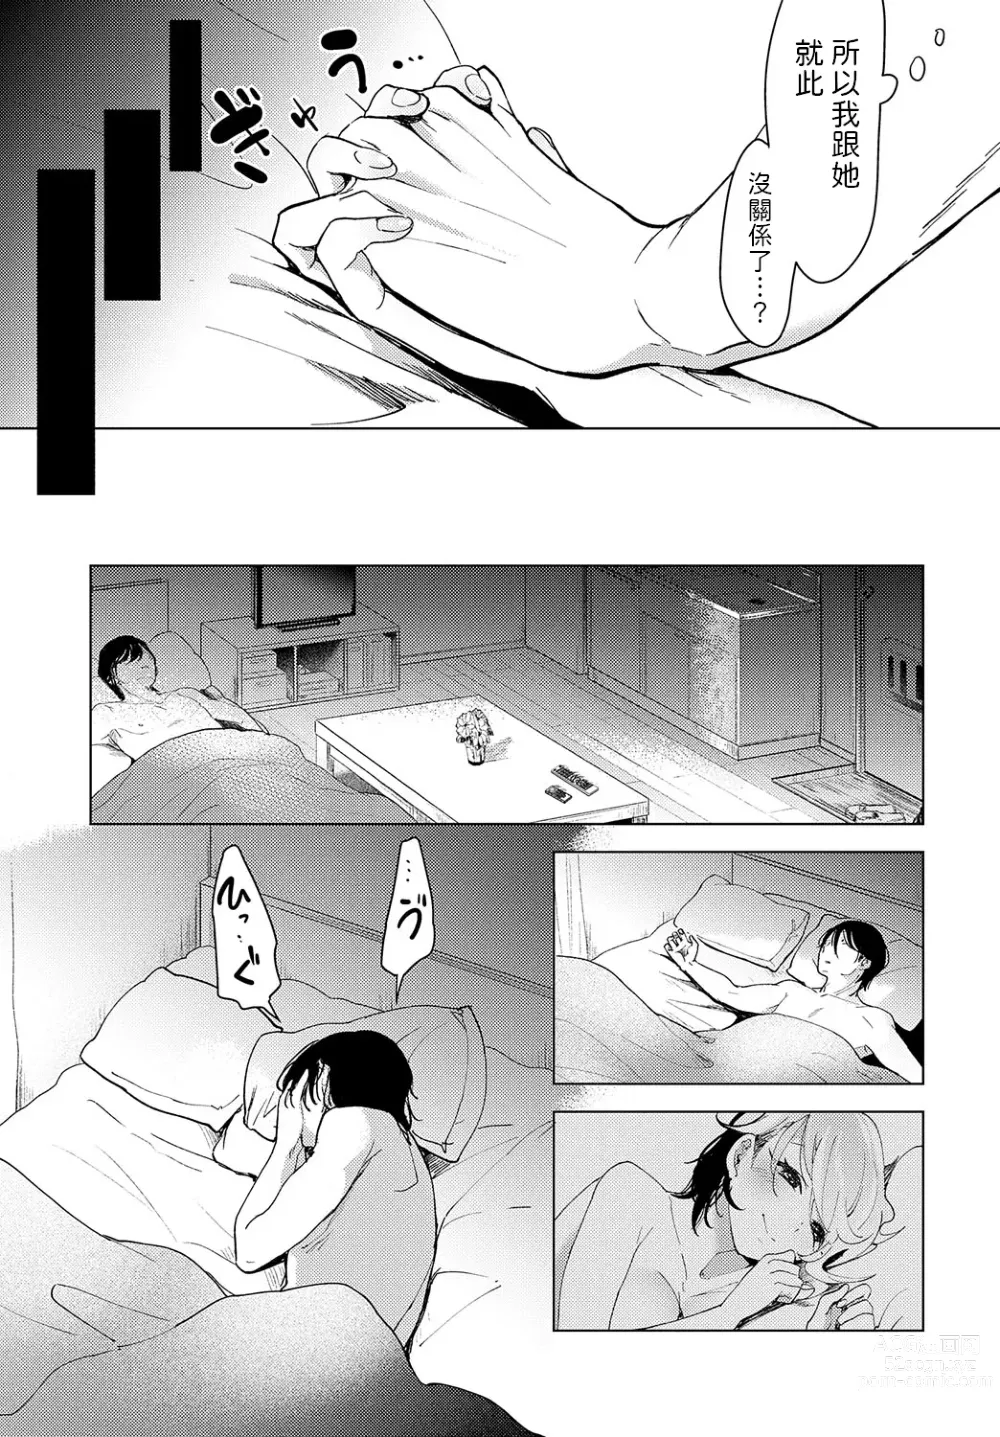 Page 29 of manga Tsuru no Ongaeshi